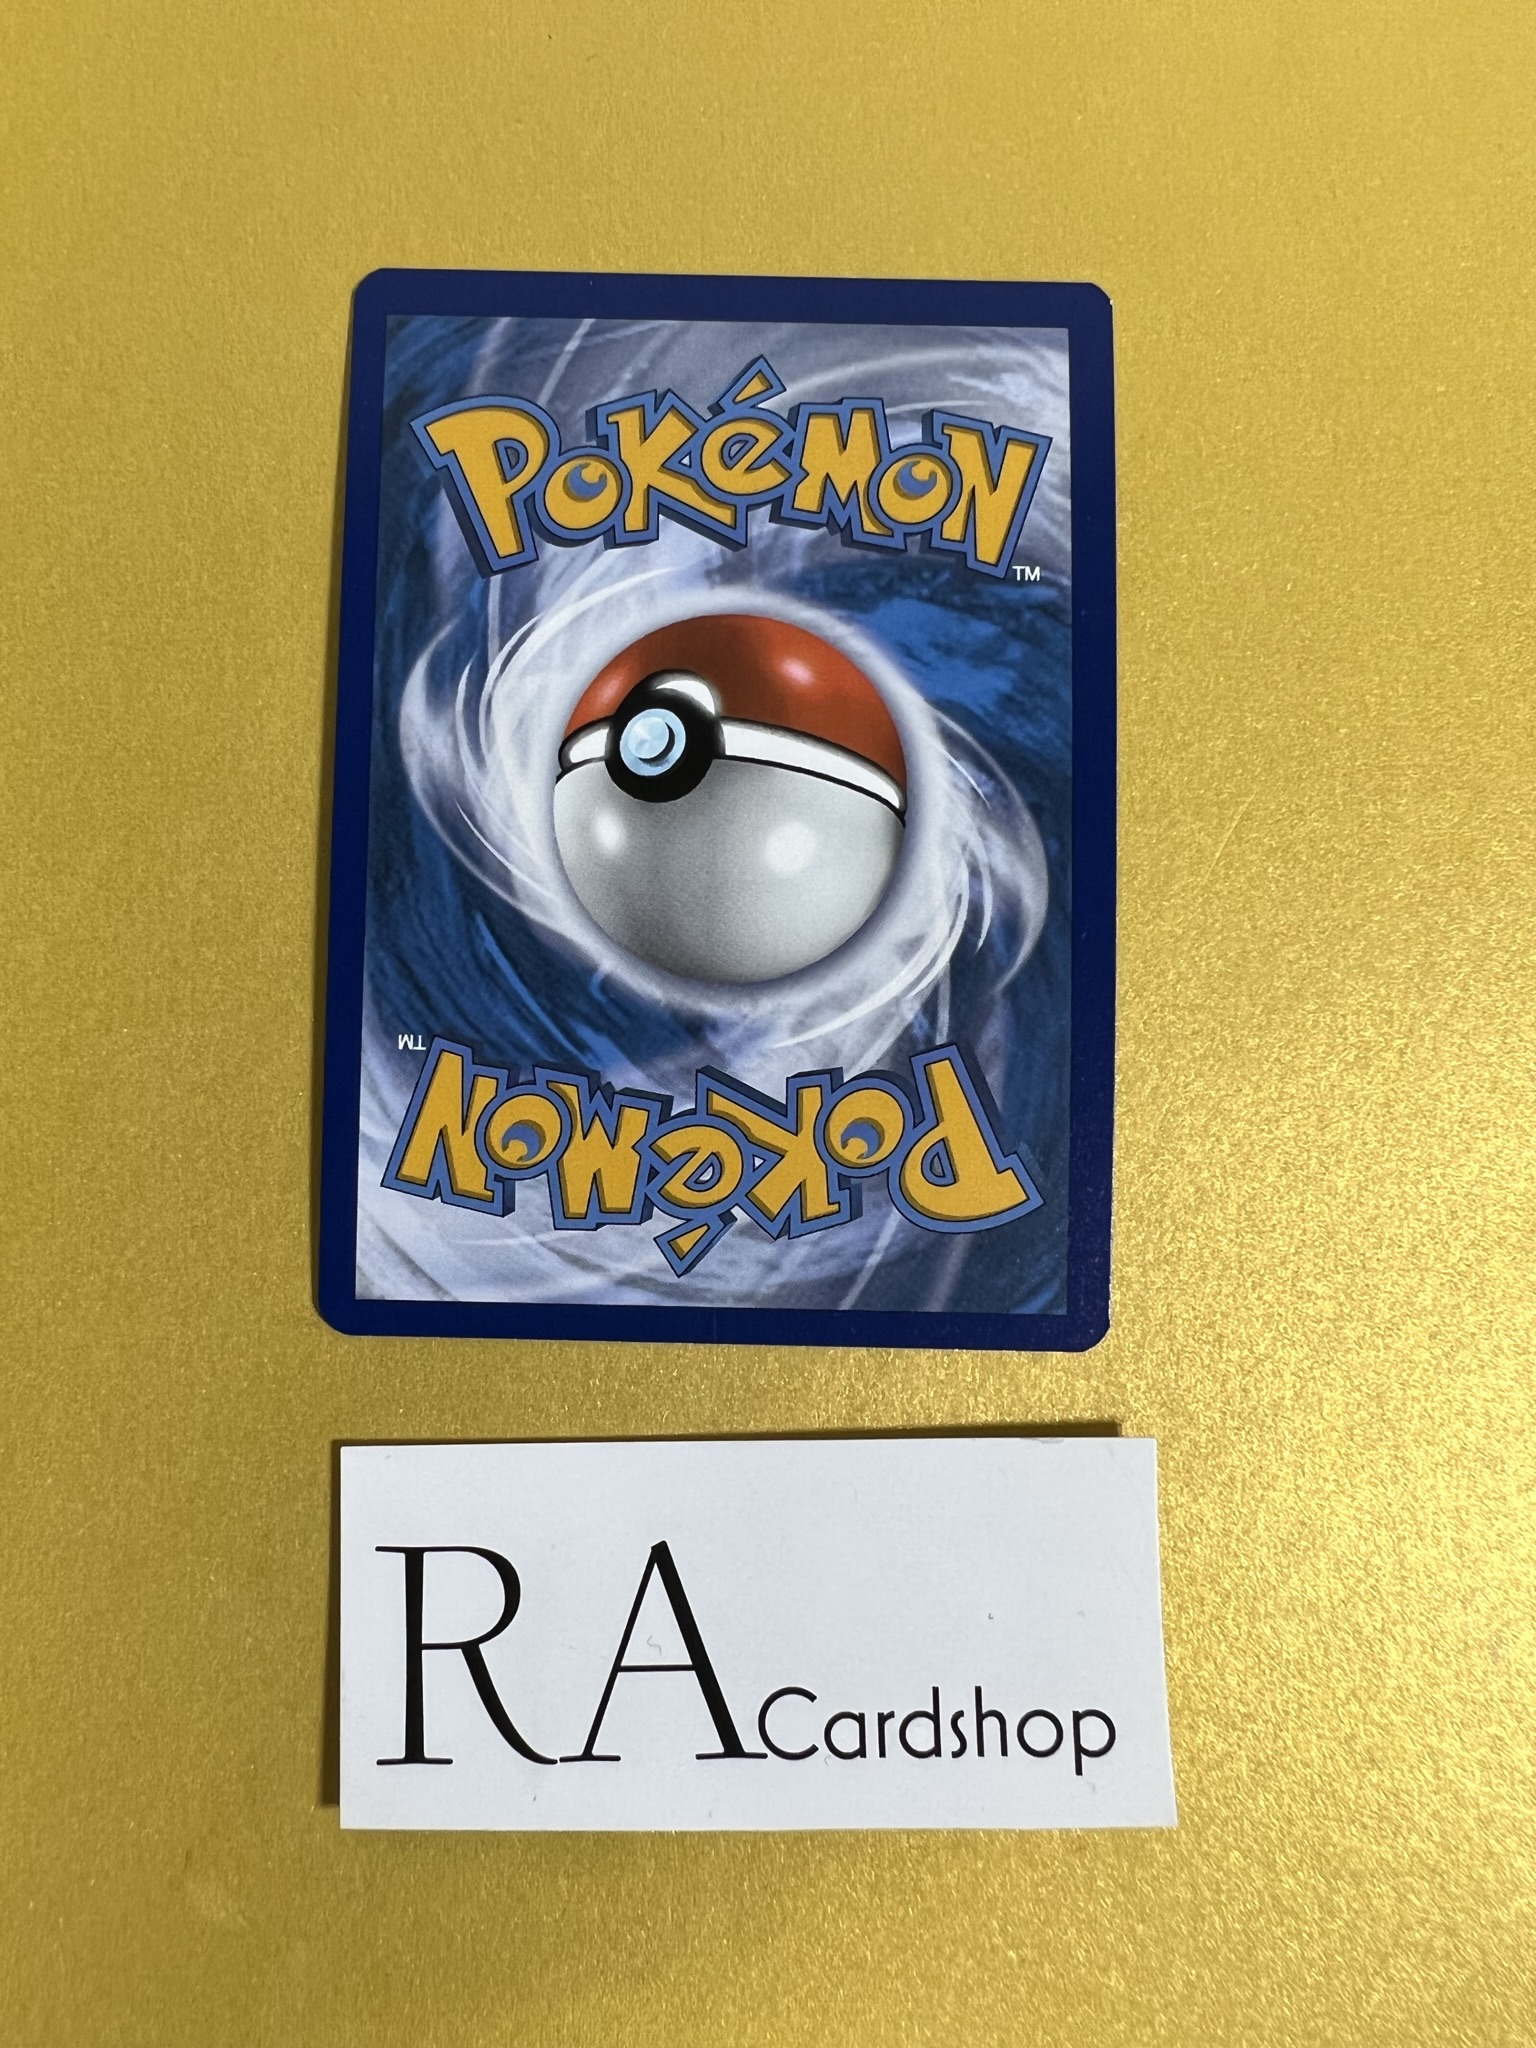 Cabalion Holo Rare 114/198 Chilling Reign Pokémon